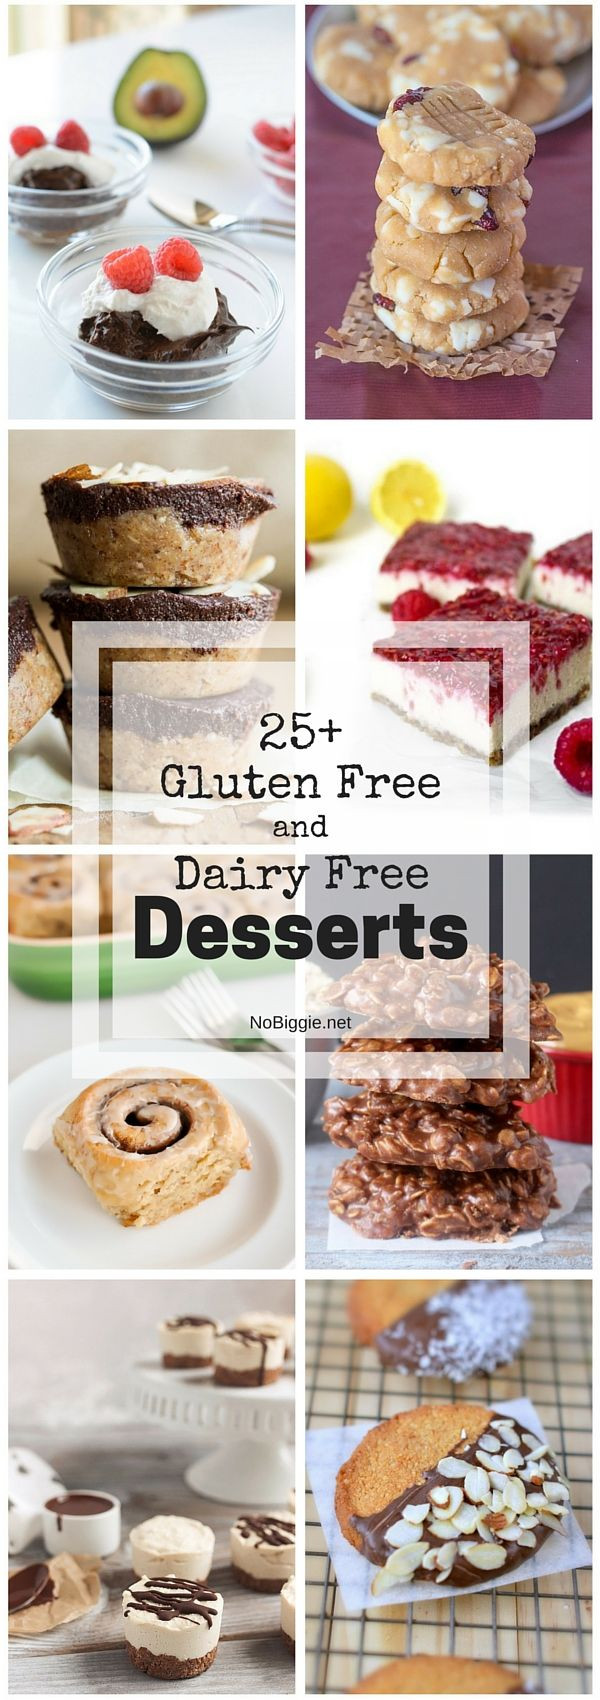 Gluten Free Dairy Free Nut Free Dessert Recipes
 17 Best images about Gluten Free Dairy Free Soy Free